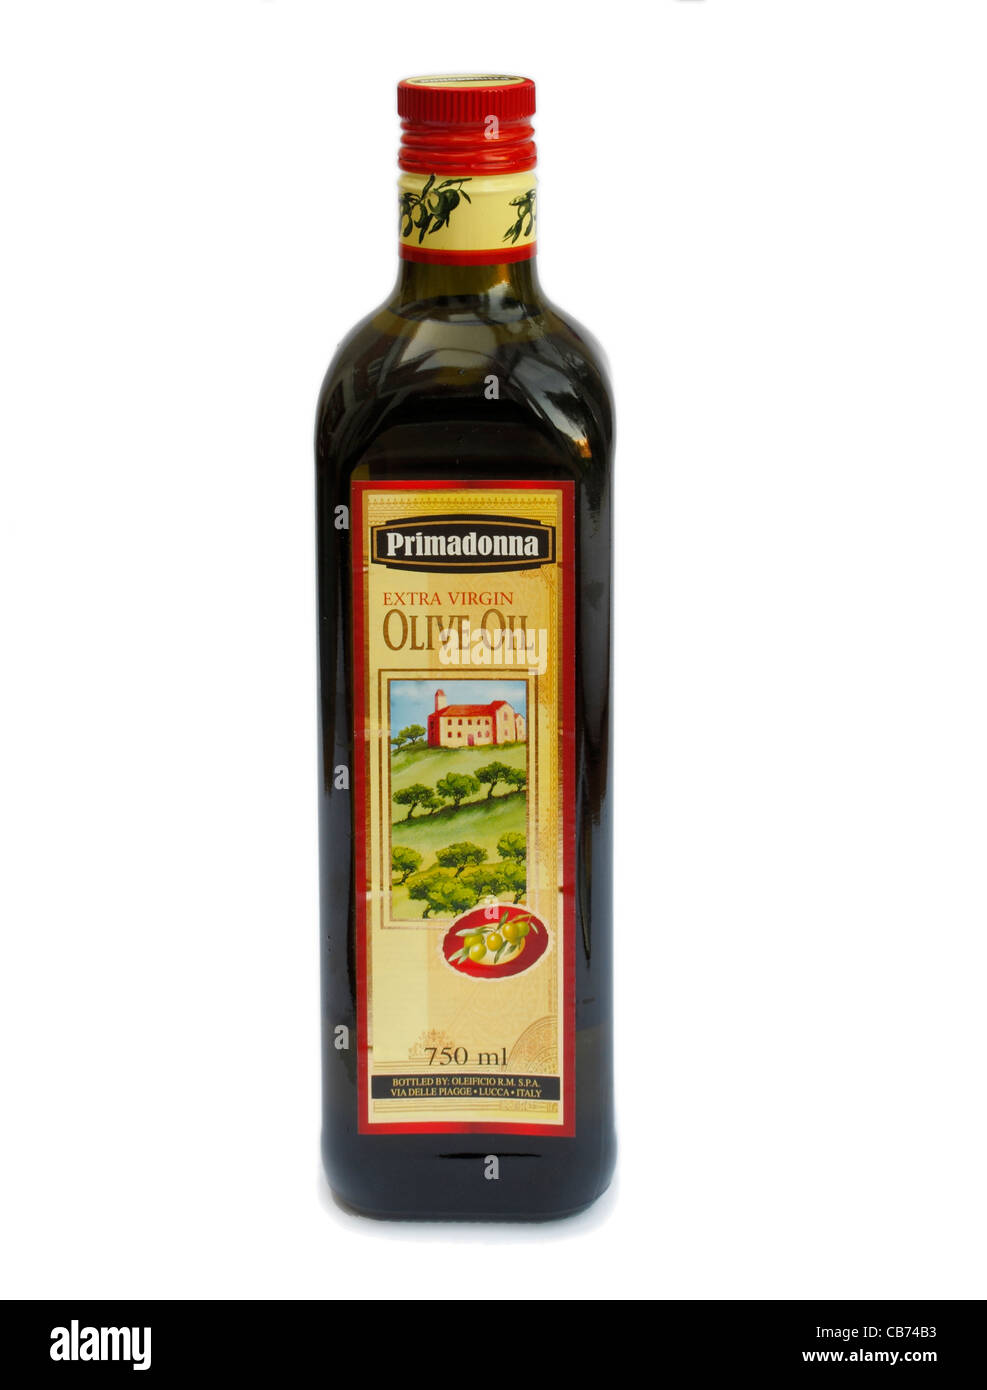 0,7 Liter Glasflasche Olivenöl extra vergine Primadonna Marke von Lidl verkauft Stockfoto